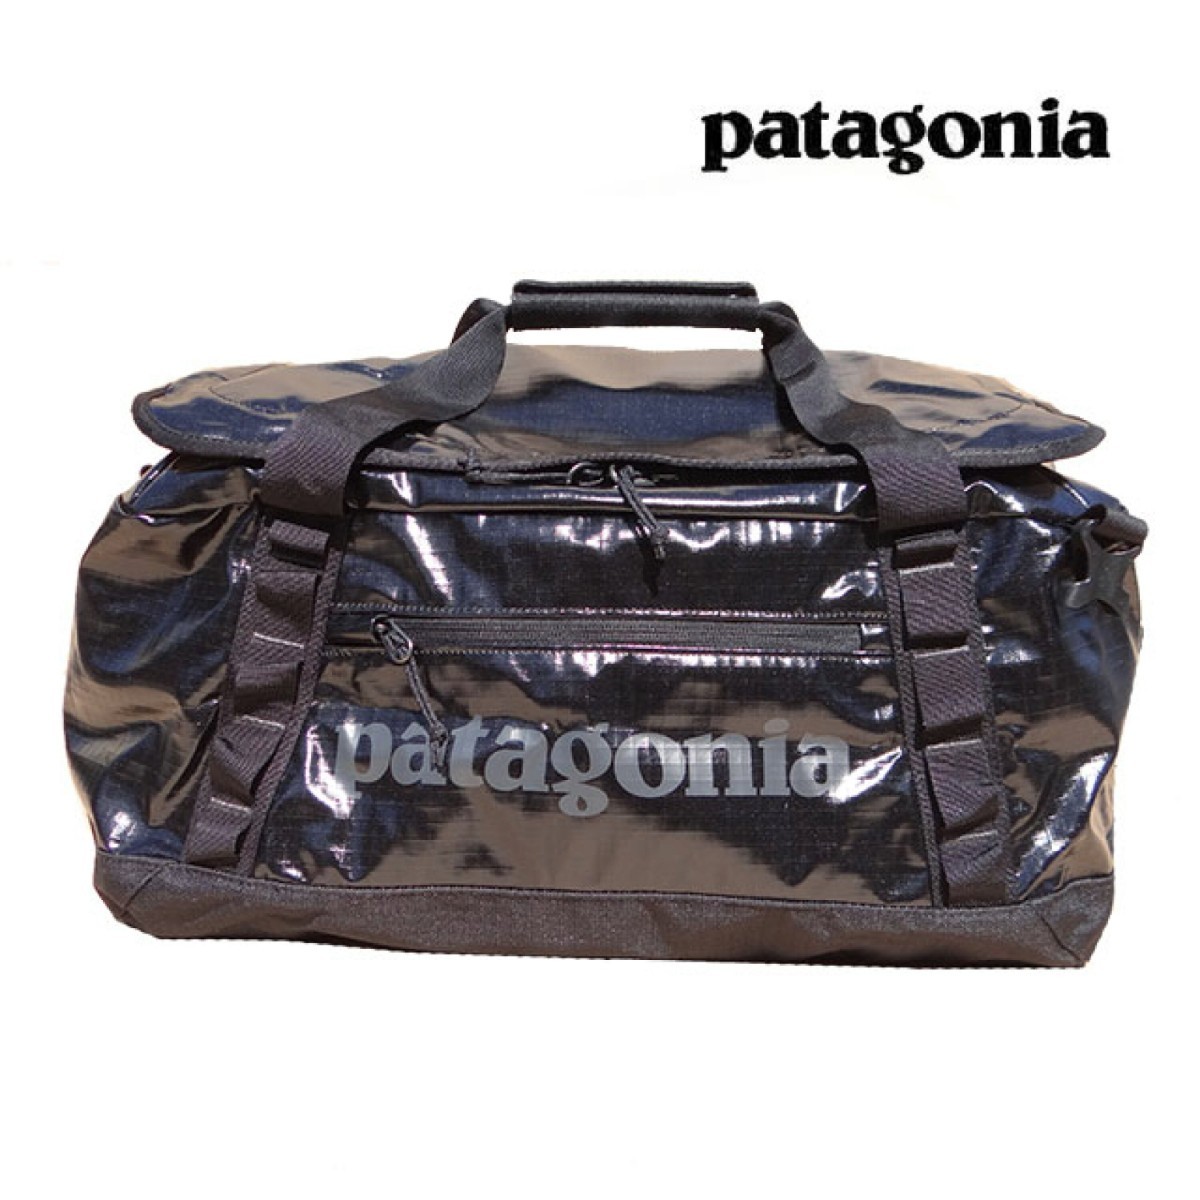 patagoniaパタゴニア ダッフルバッグ 40L BLACK ボストンバッグ バッグパック リュック 